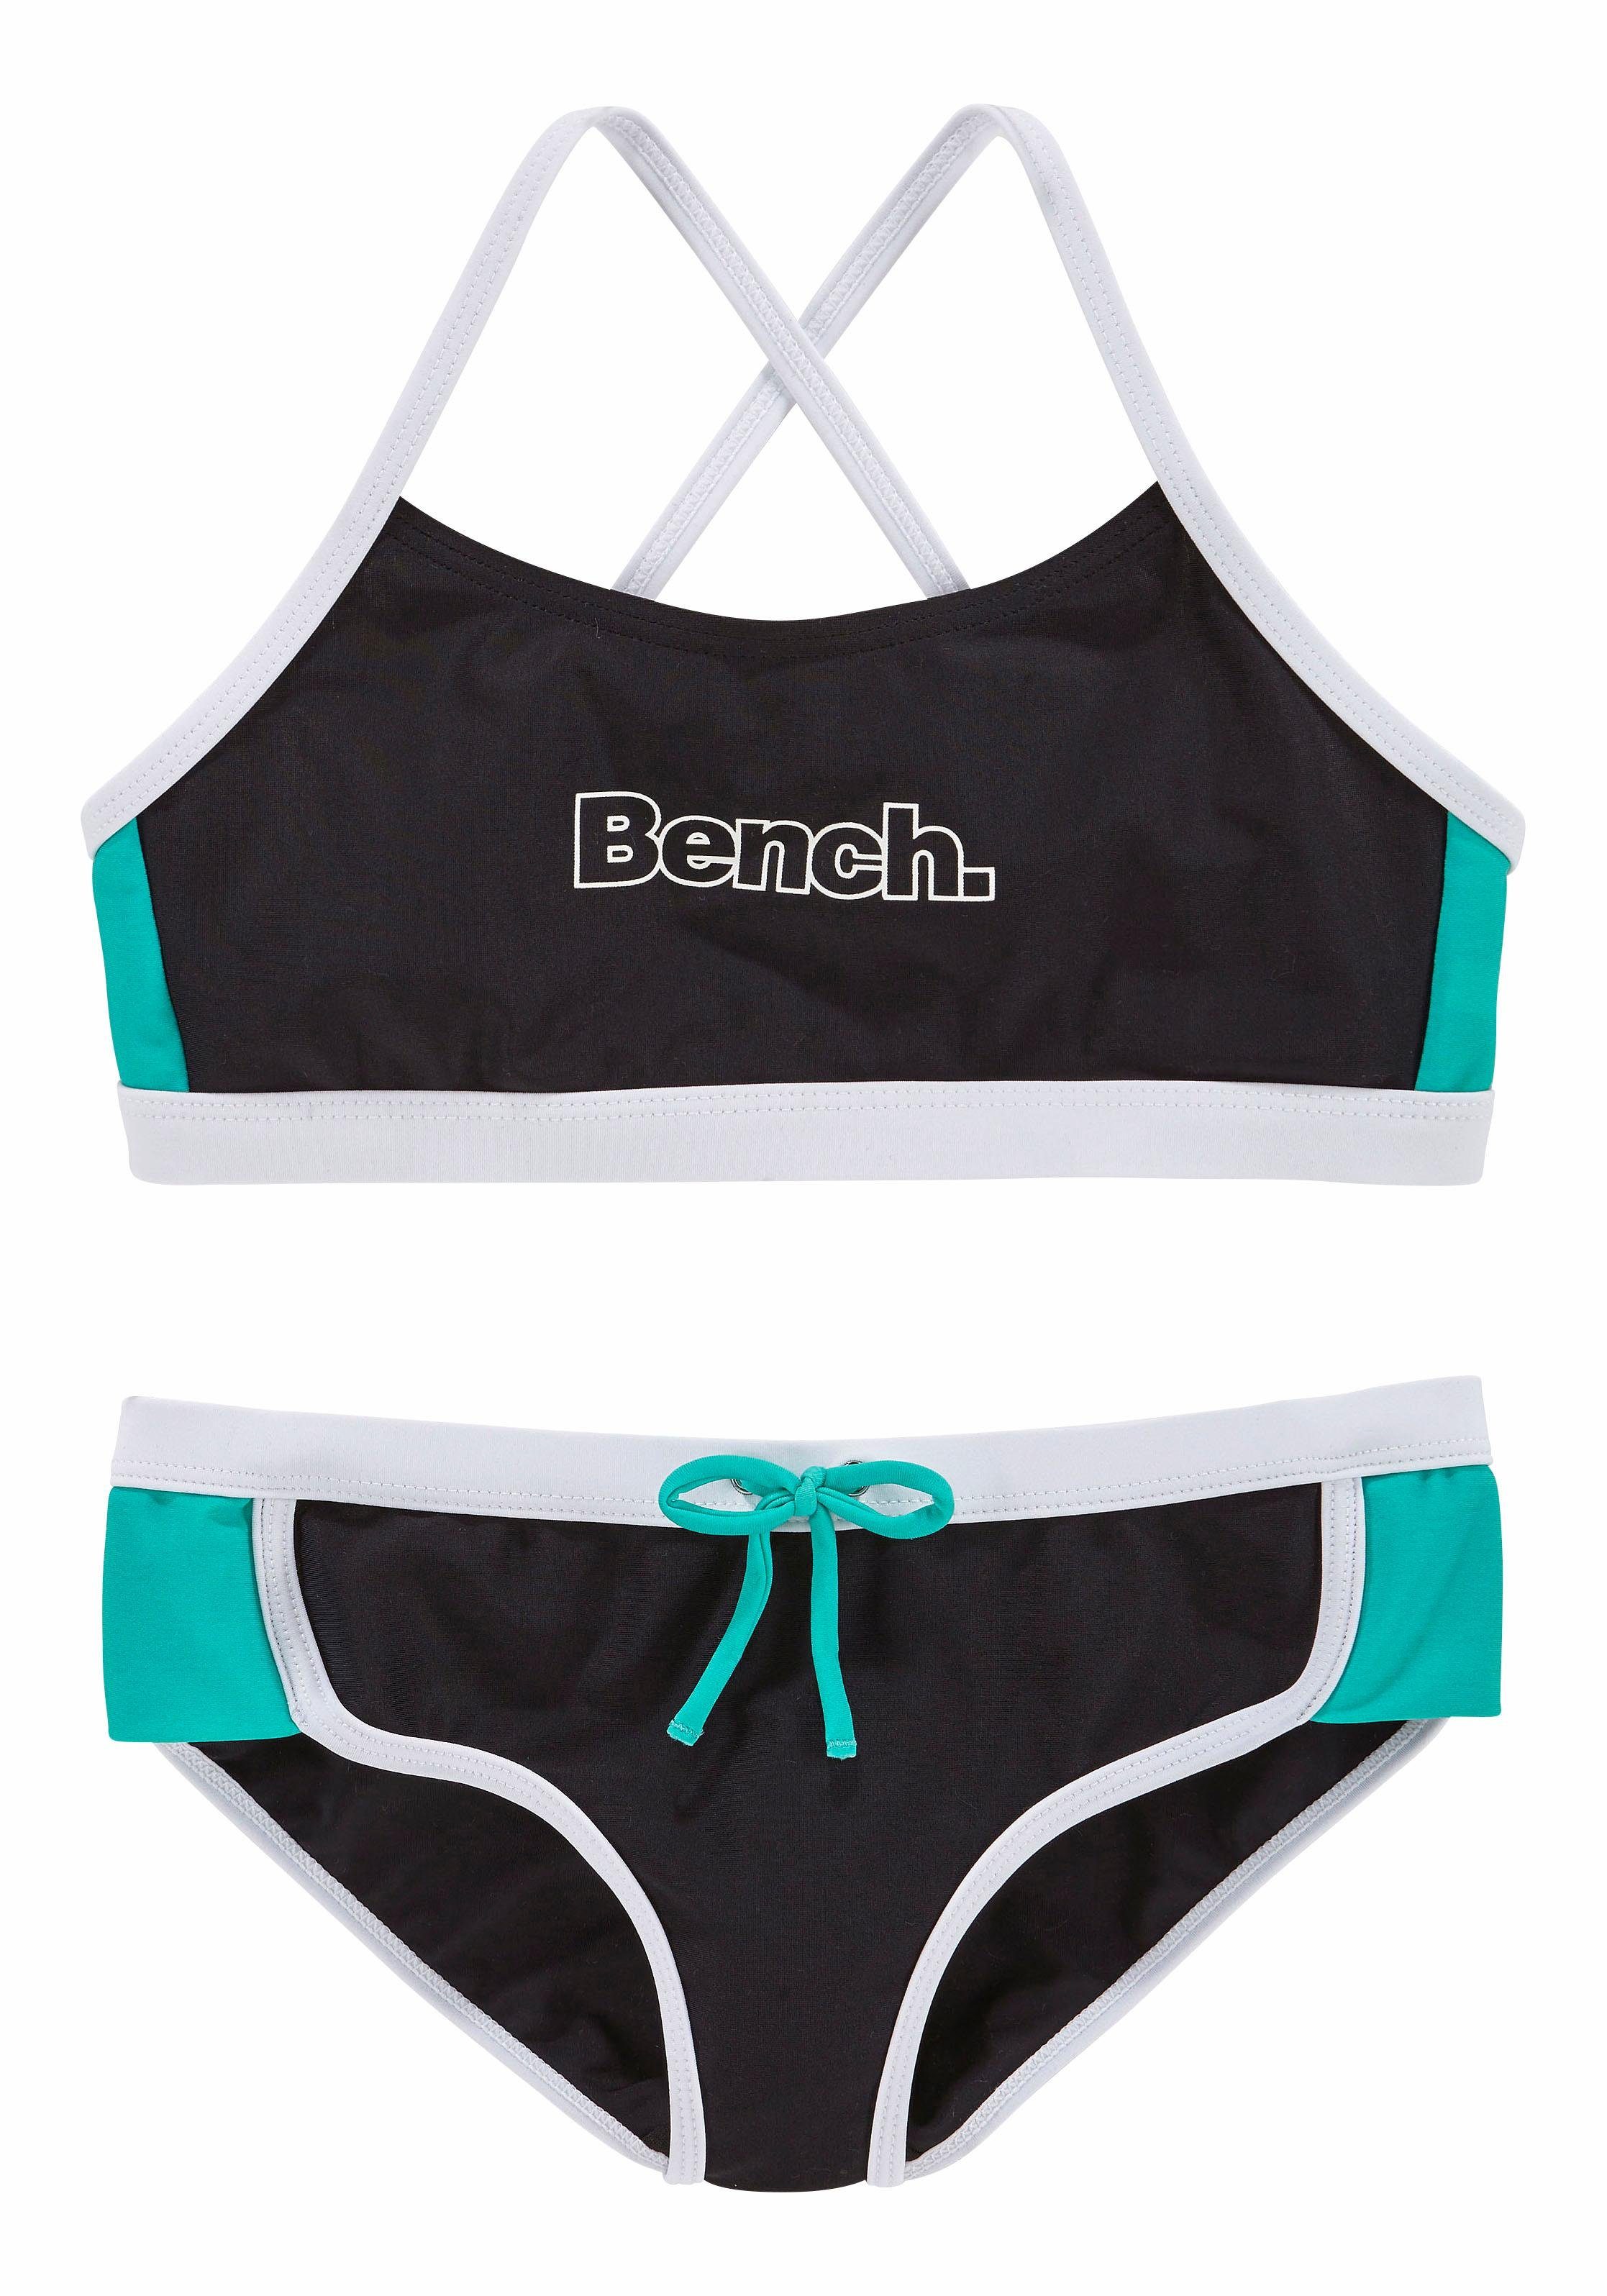 Bench. Bustier-Bikini mit Kontrastdetails kaufen | OTTO